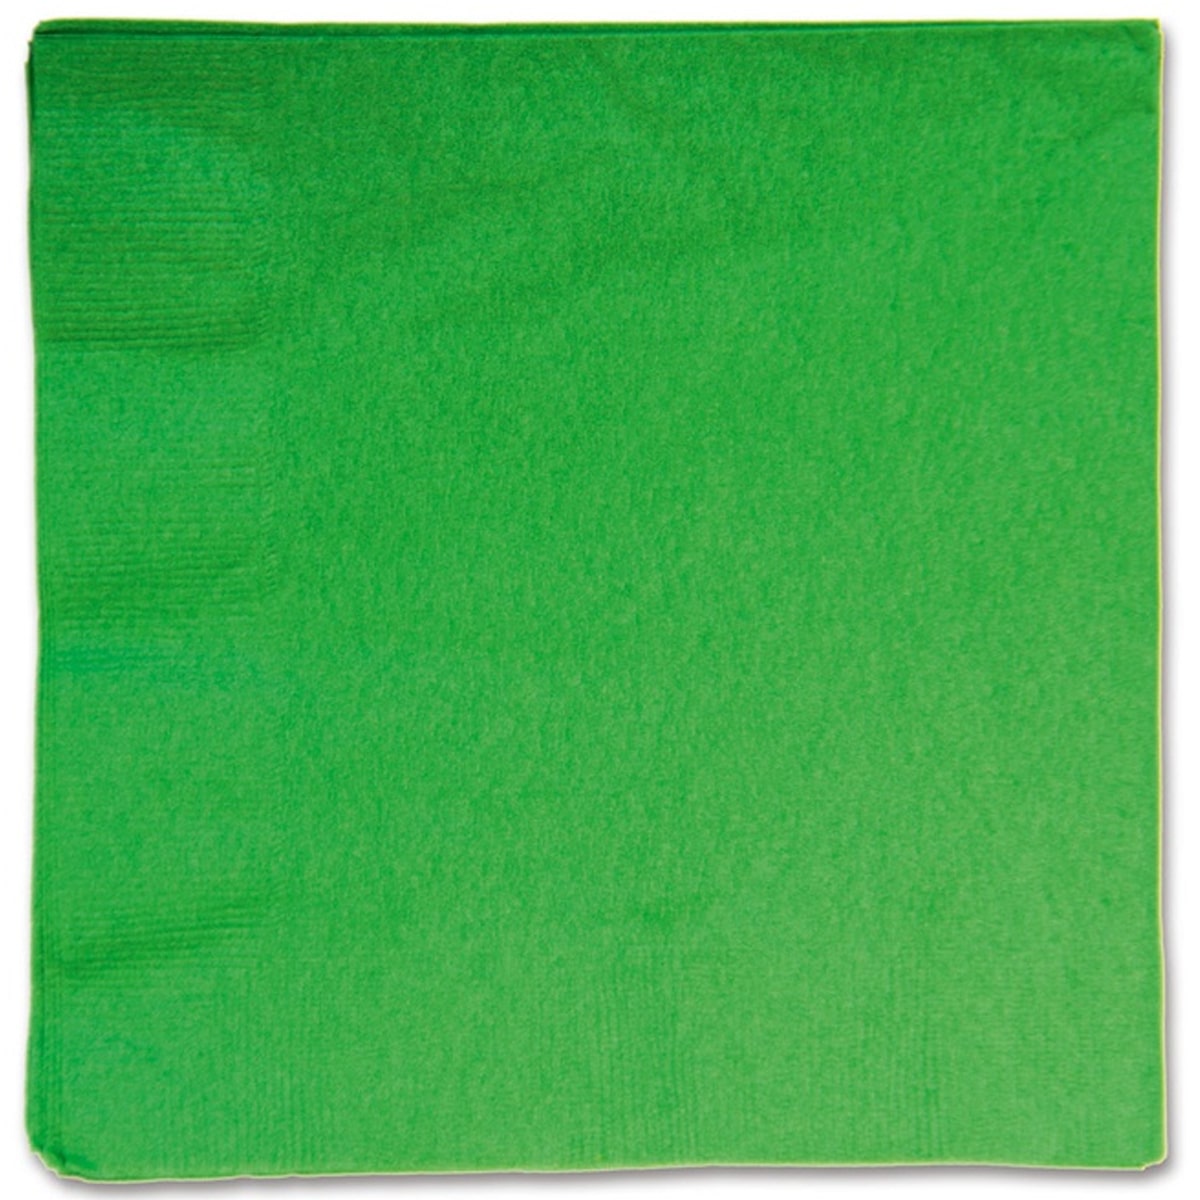 1502-1097 А Серветки зелені Festive Green 33 см 16 шт